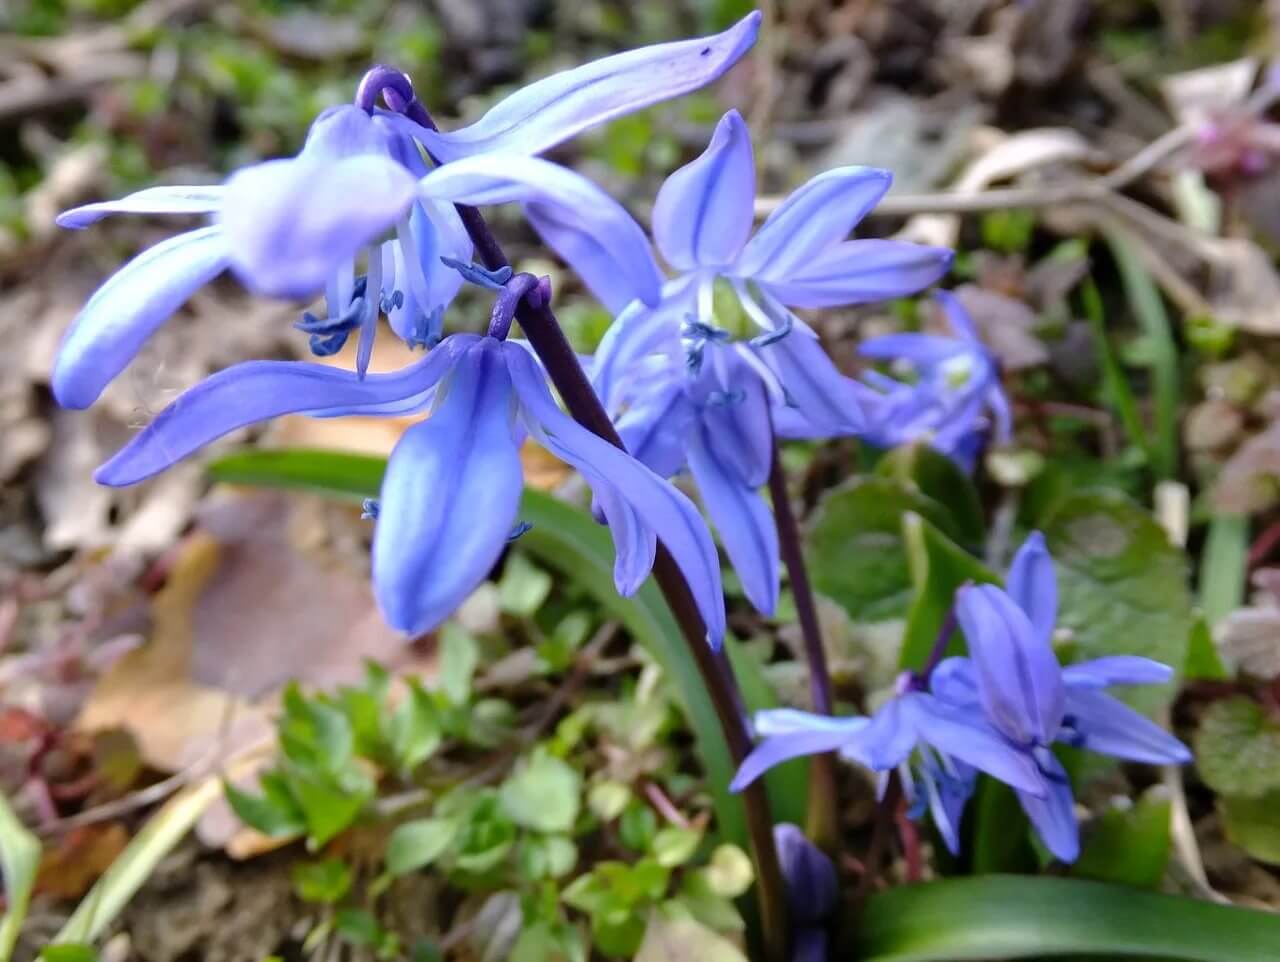 Сцилла (пролеска) – первый весенний цветок, «зимние синие слёзки»